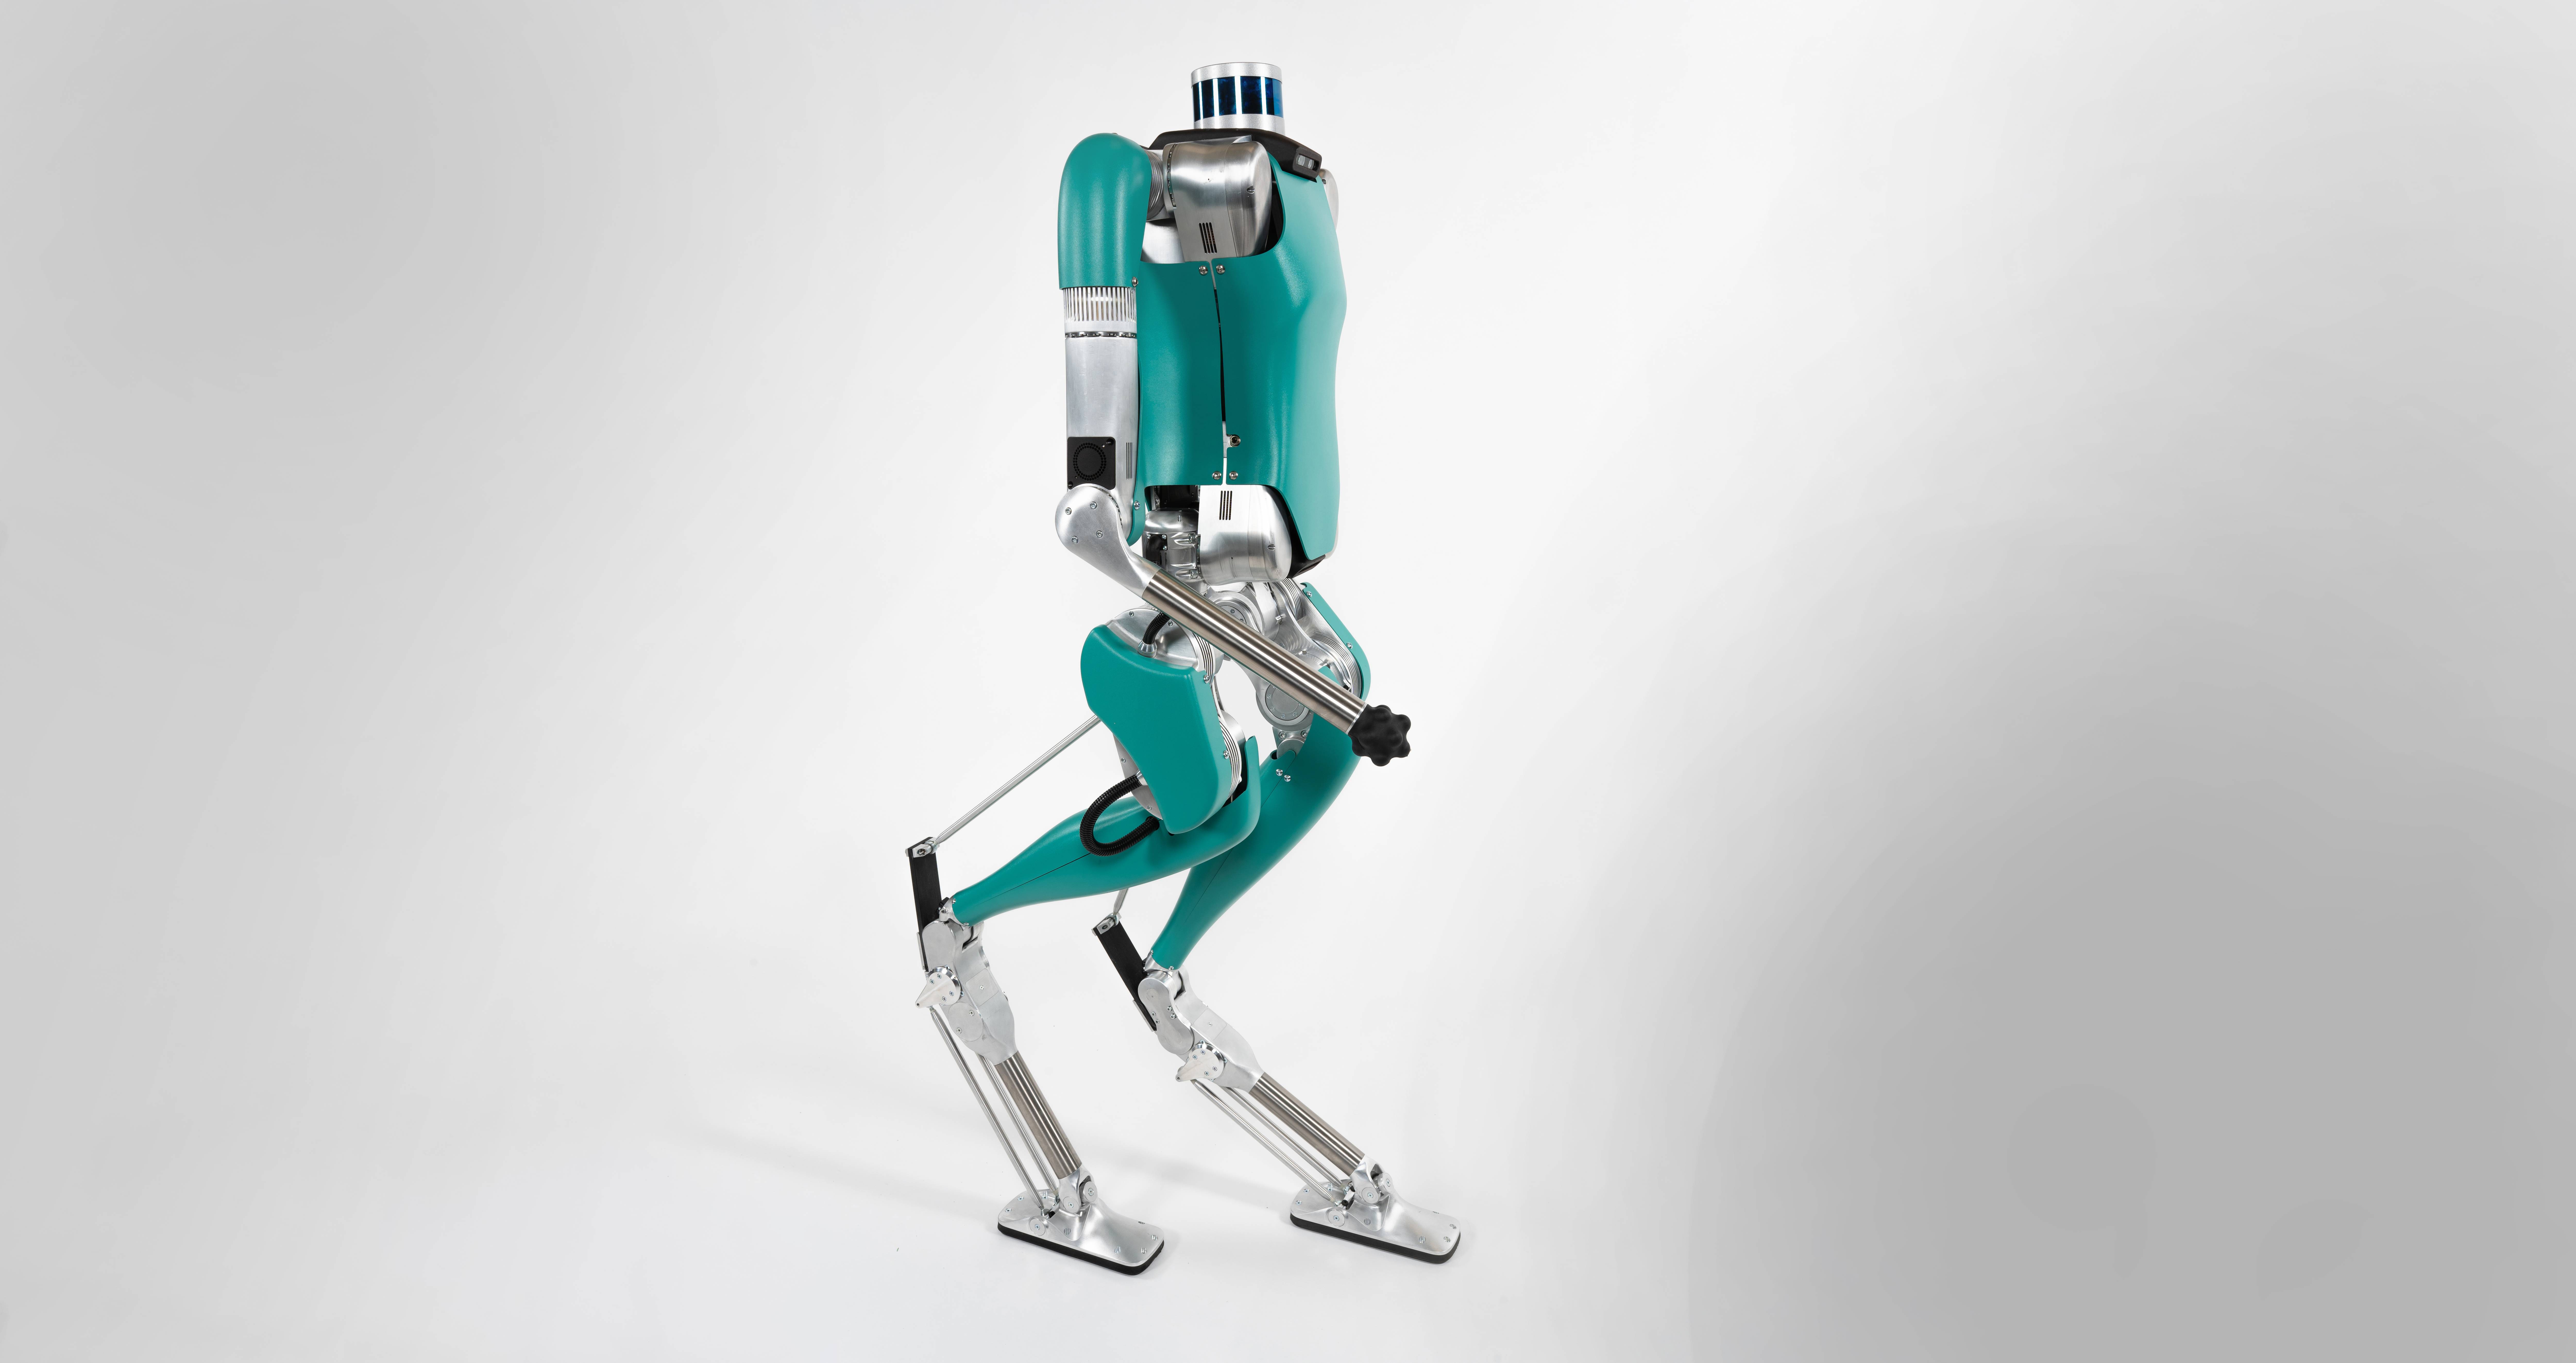 Lager als erster Einsatzort für humanoide Roboter?